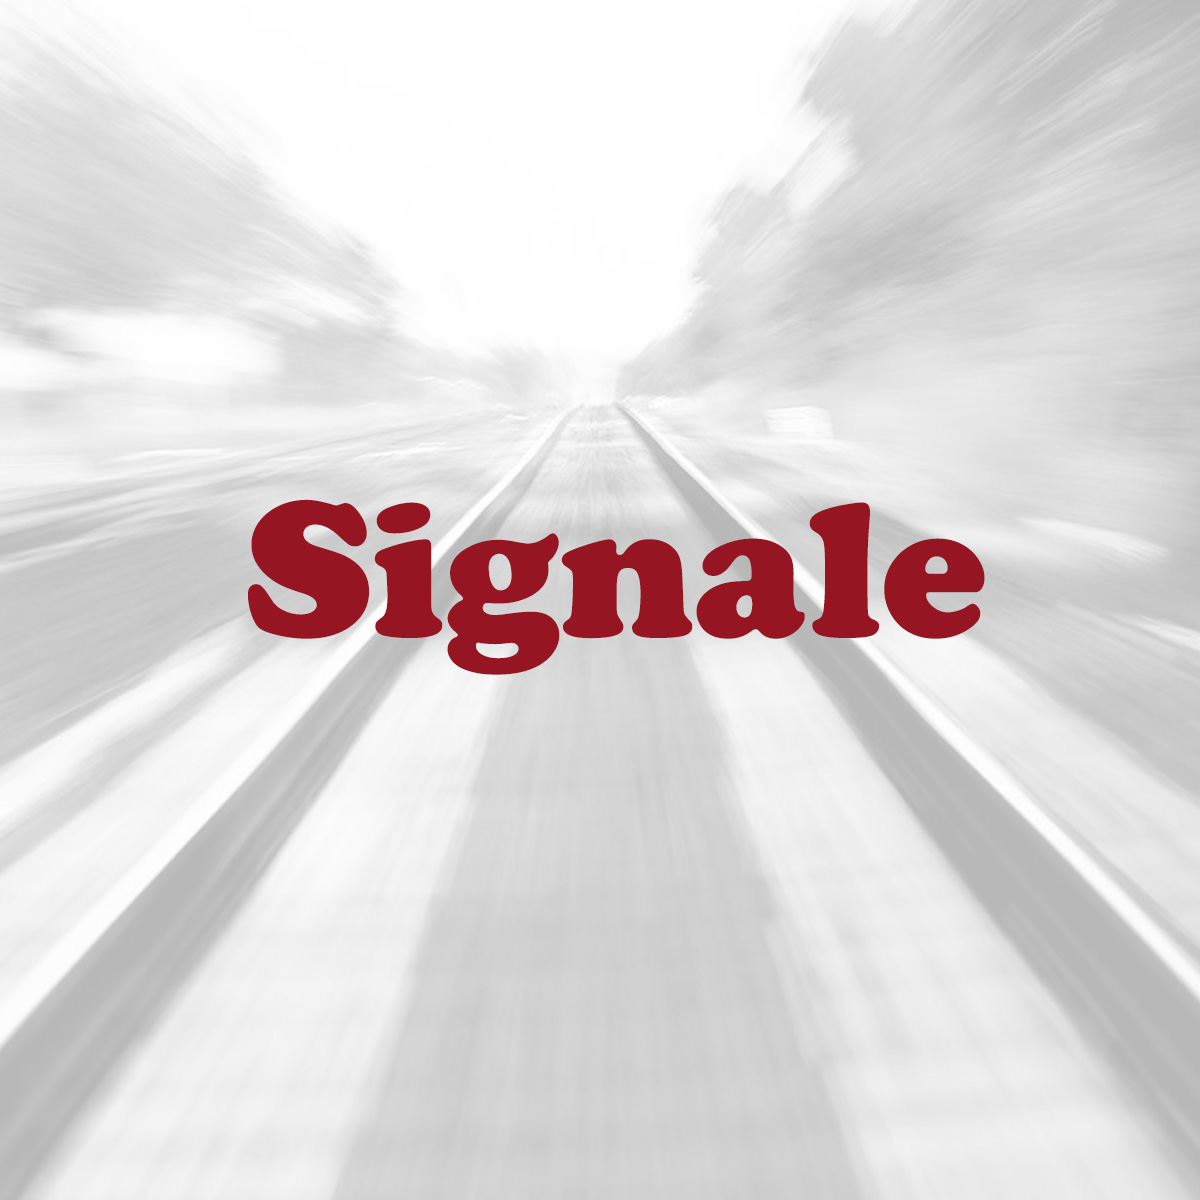 Signale